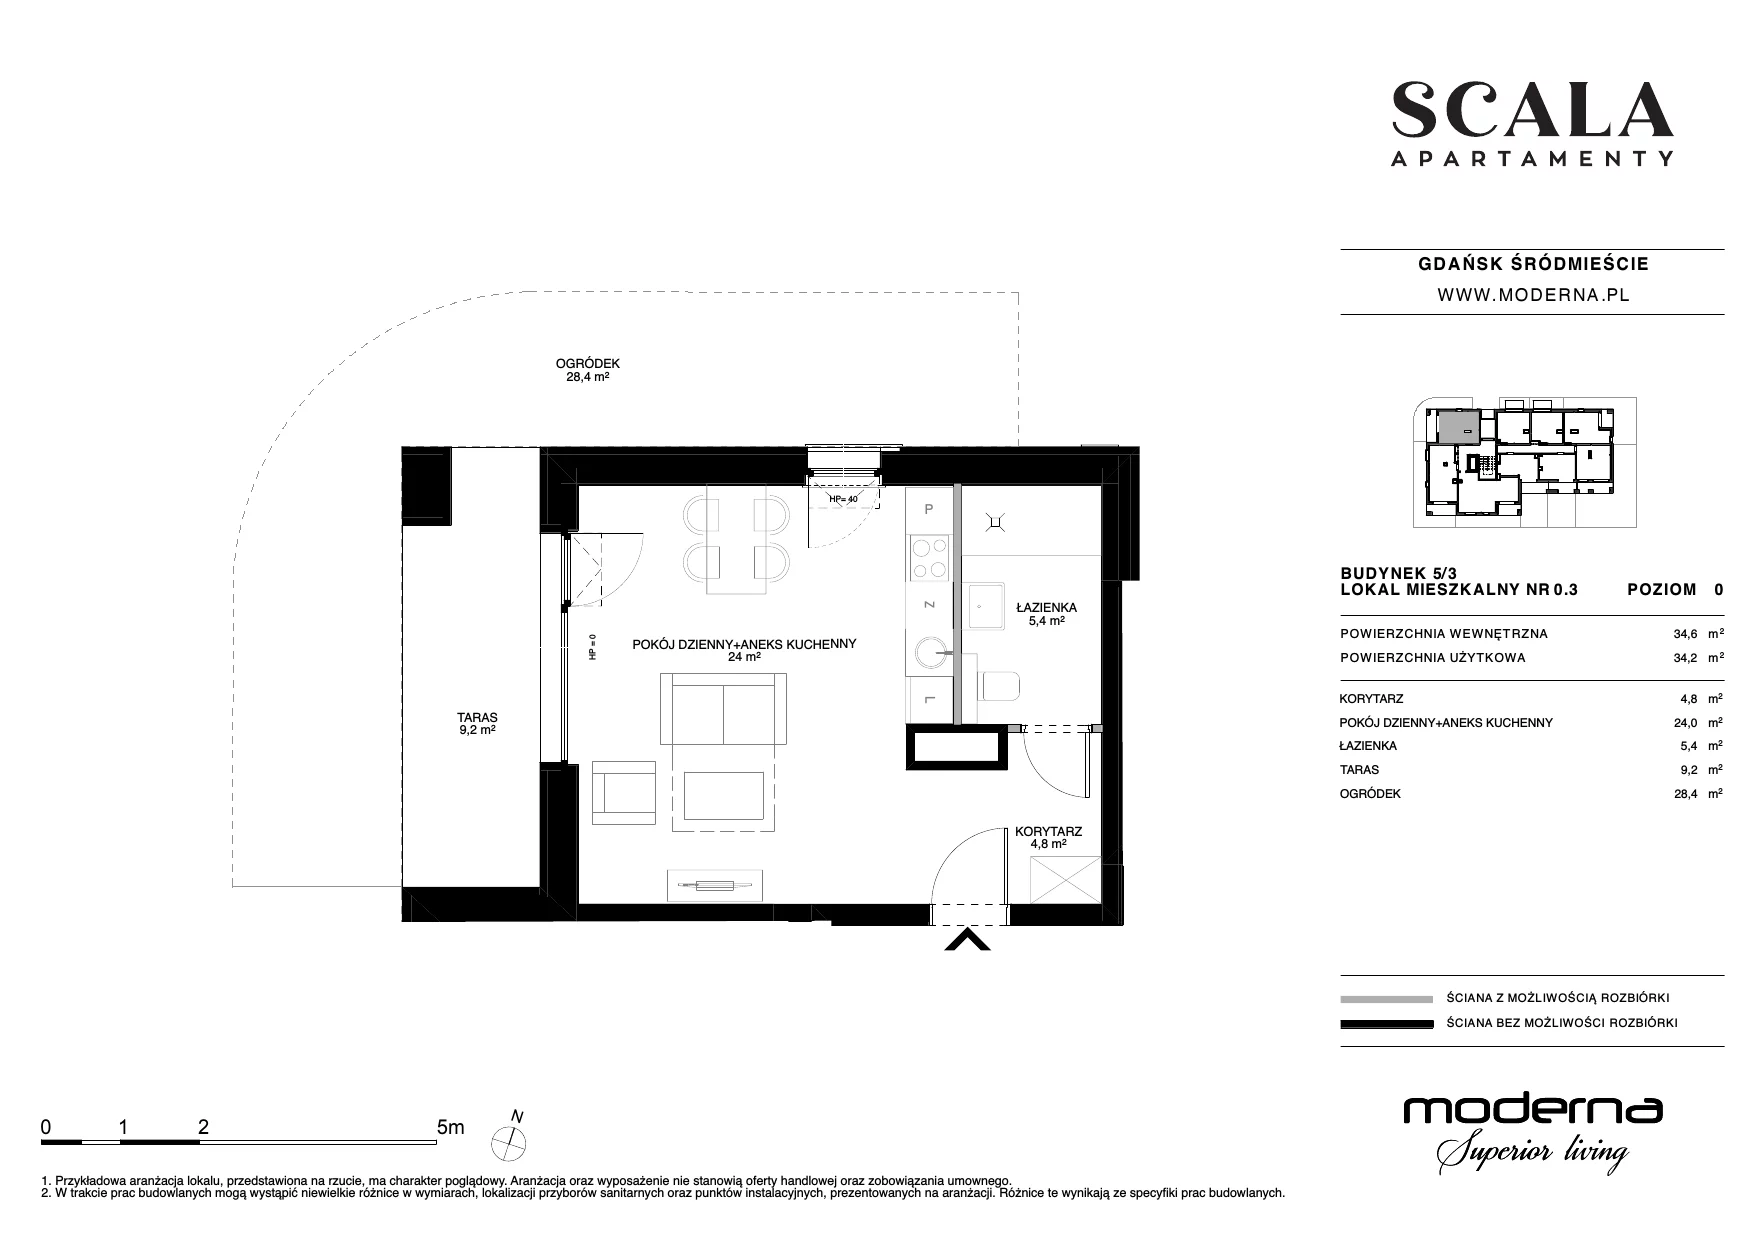 Apartament 34,49 m², parter, oferta nr 5.3-0.3., Scala, Gdańsk, Śródmieście, ul. Łąkowa 60C